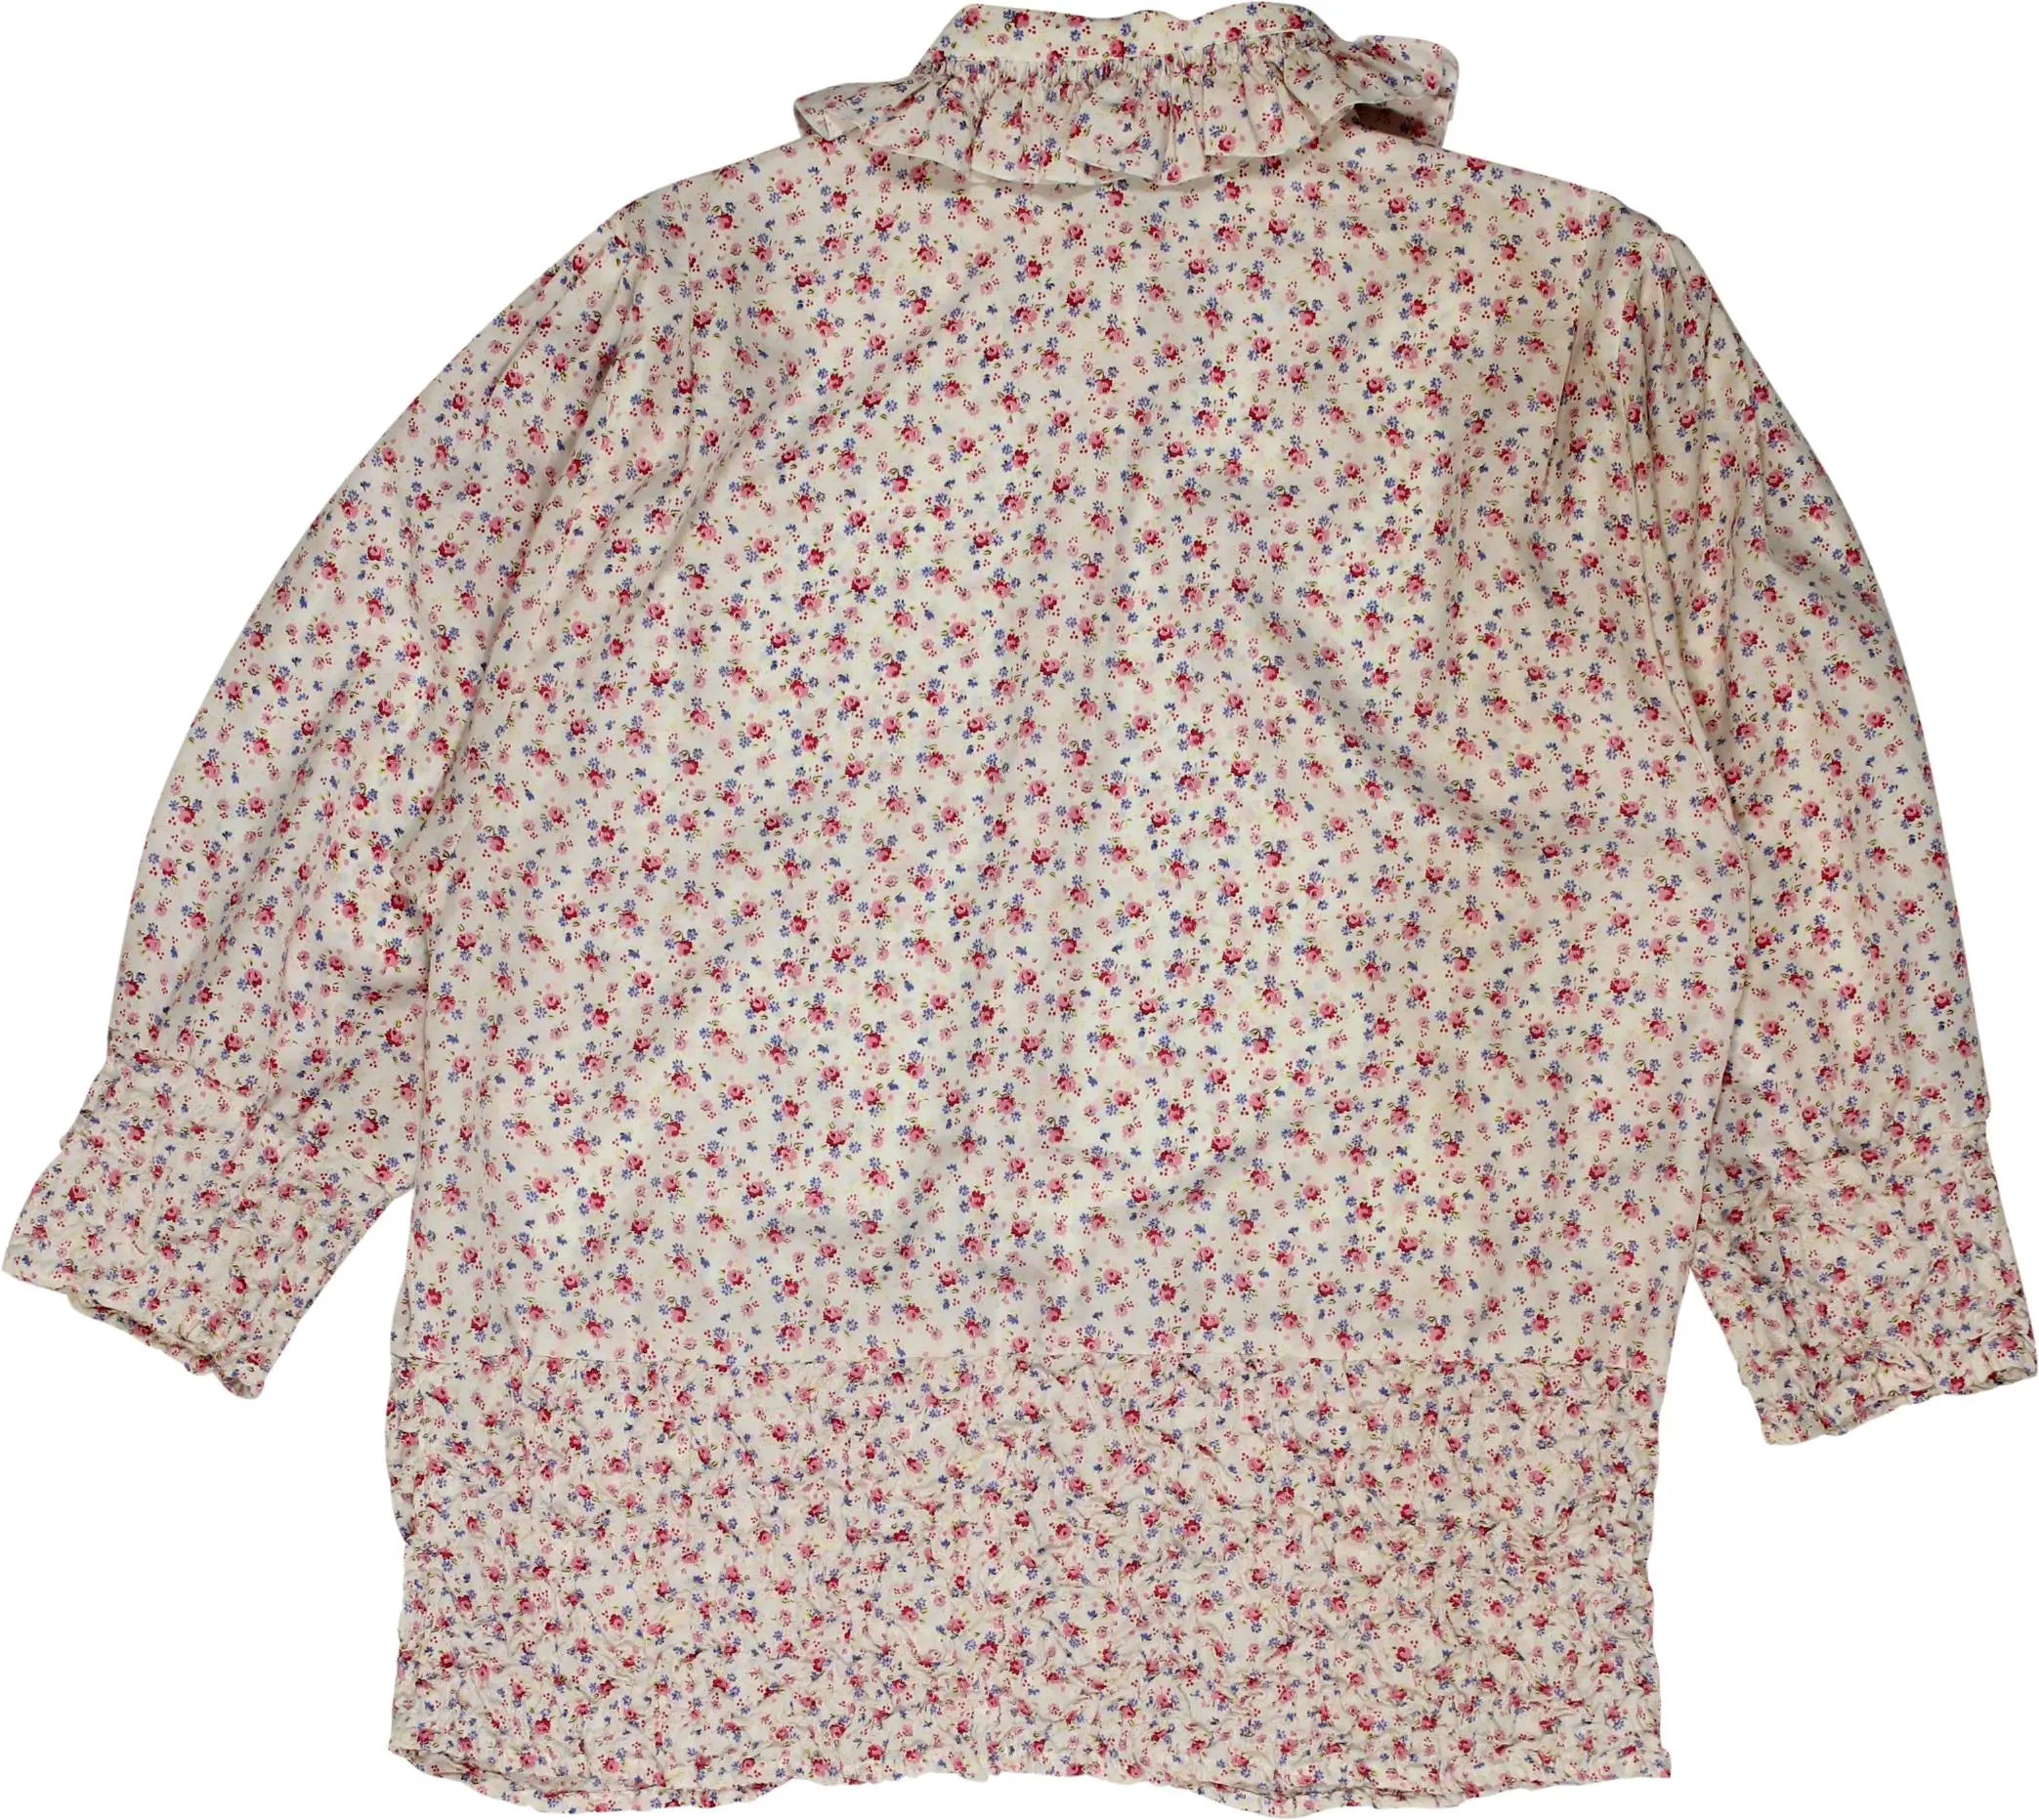 Ester Ken - Floral Shirt- ThriftTale.com - Vintage and second handclothing